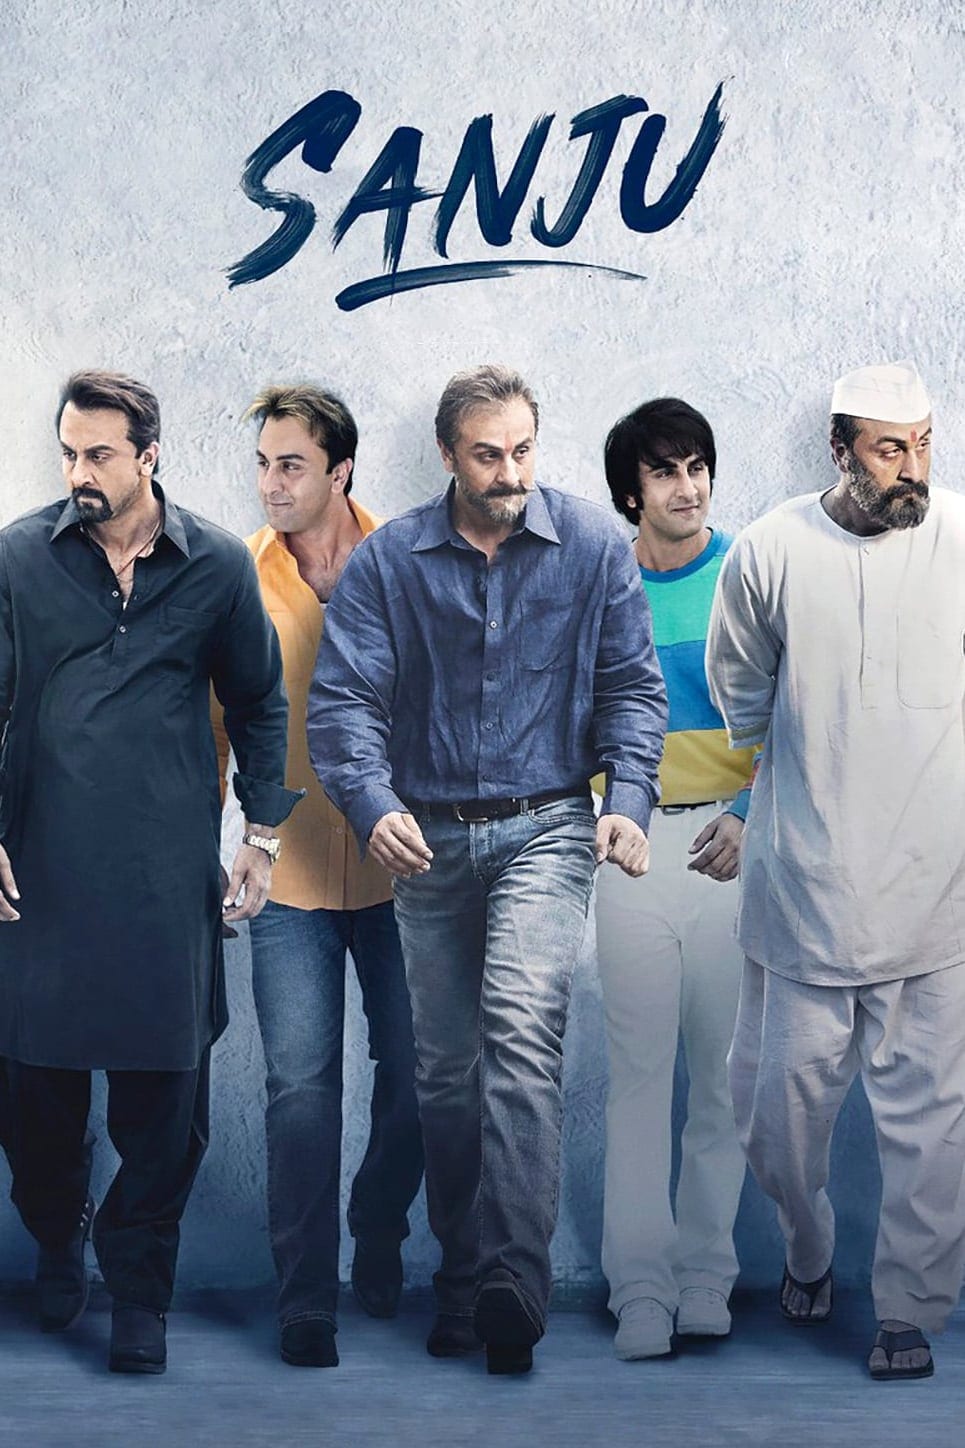 Poster for the movie "Sanju"